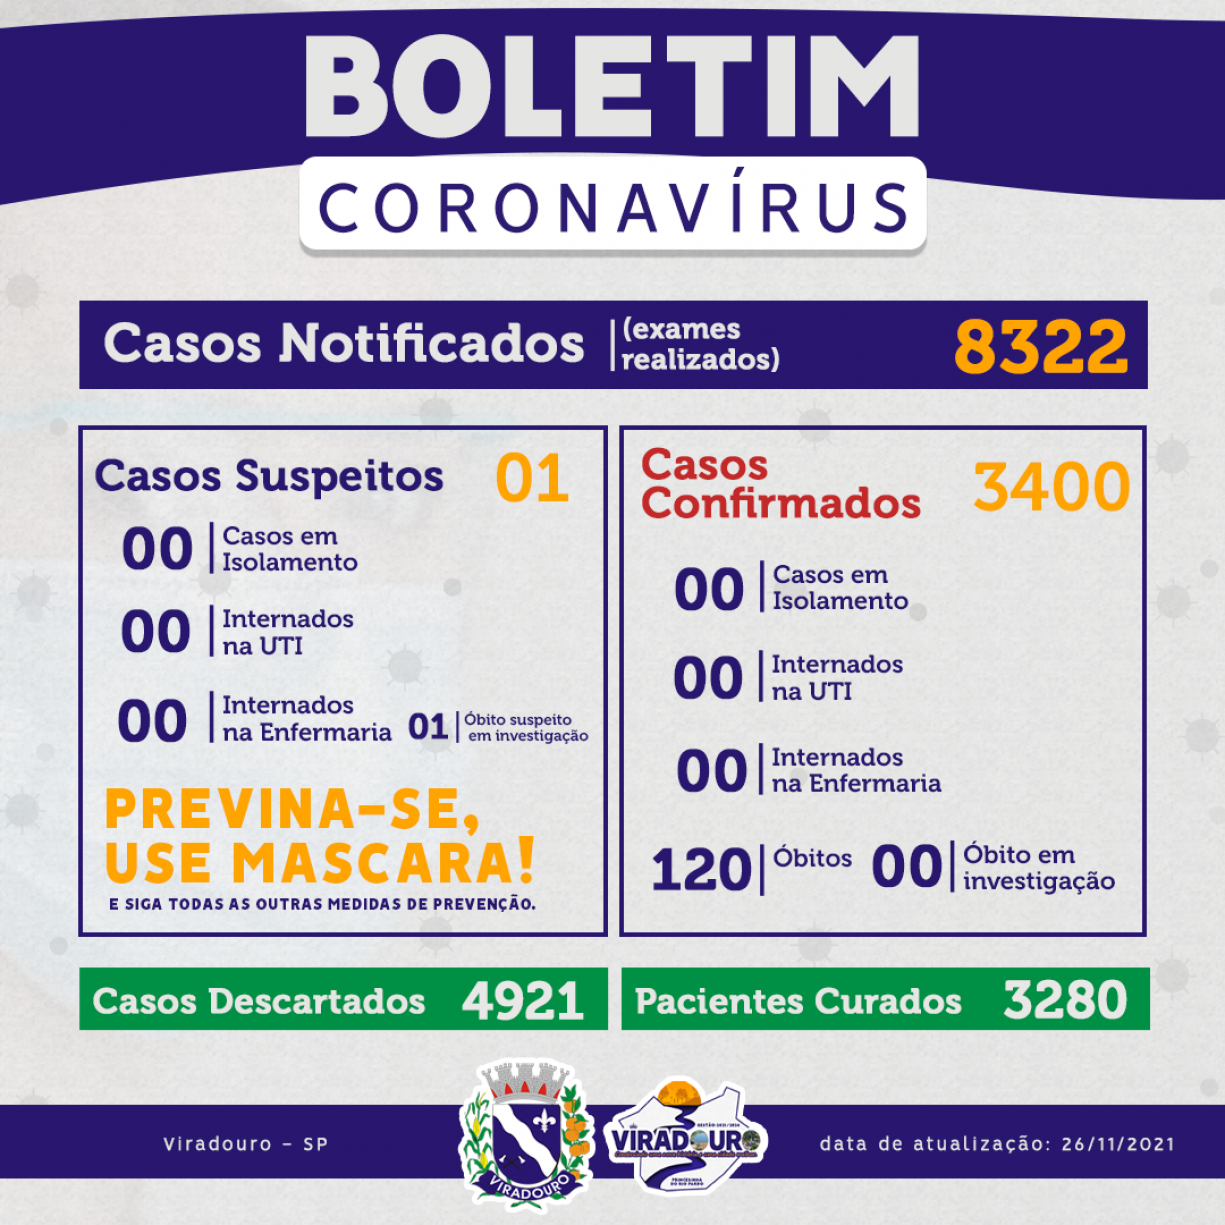 CORONAVÍRUS: BOLETIM EPIDEMIOLÓGICO (ATUALIZAÇÃO 26/11/2021)